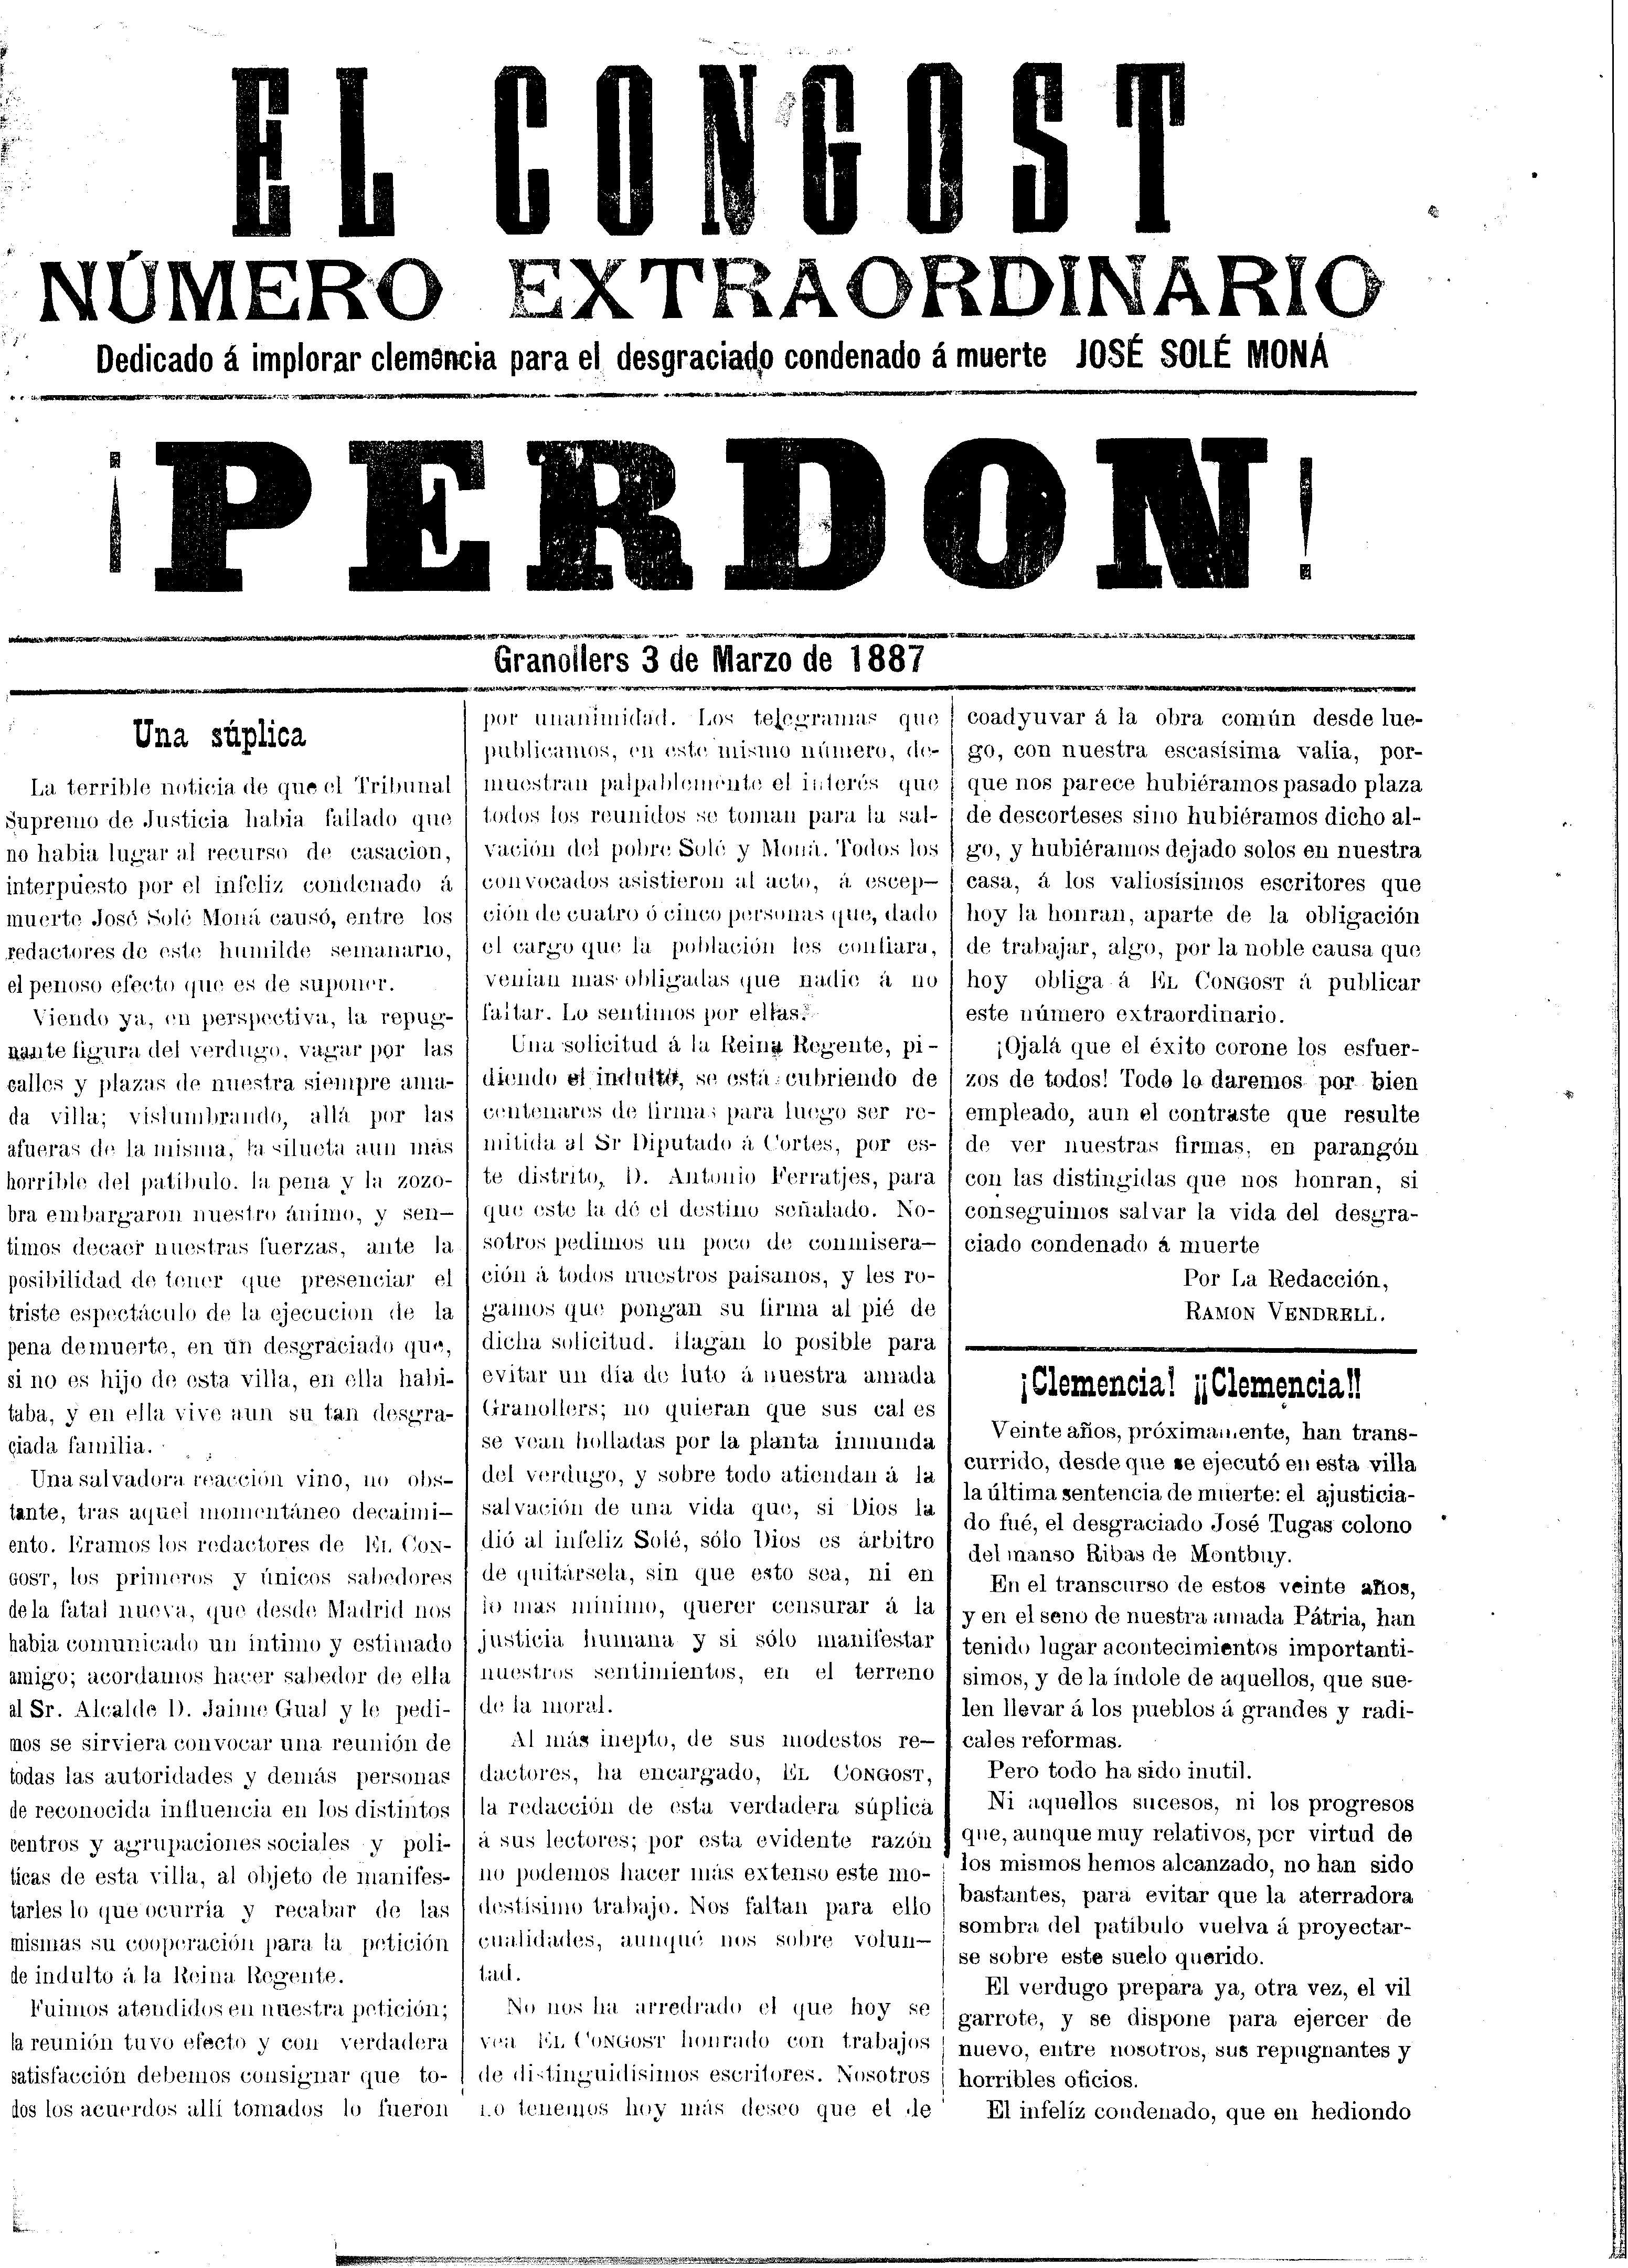 El Congost, 3/3/1887 [Issue]